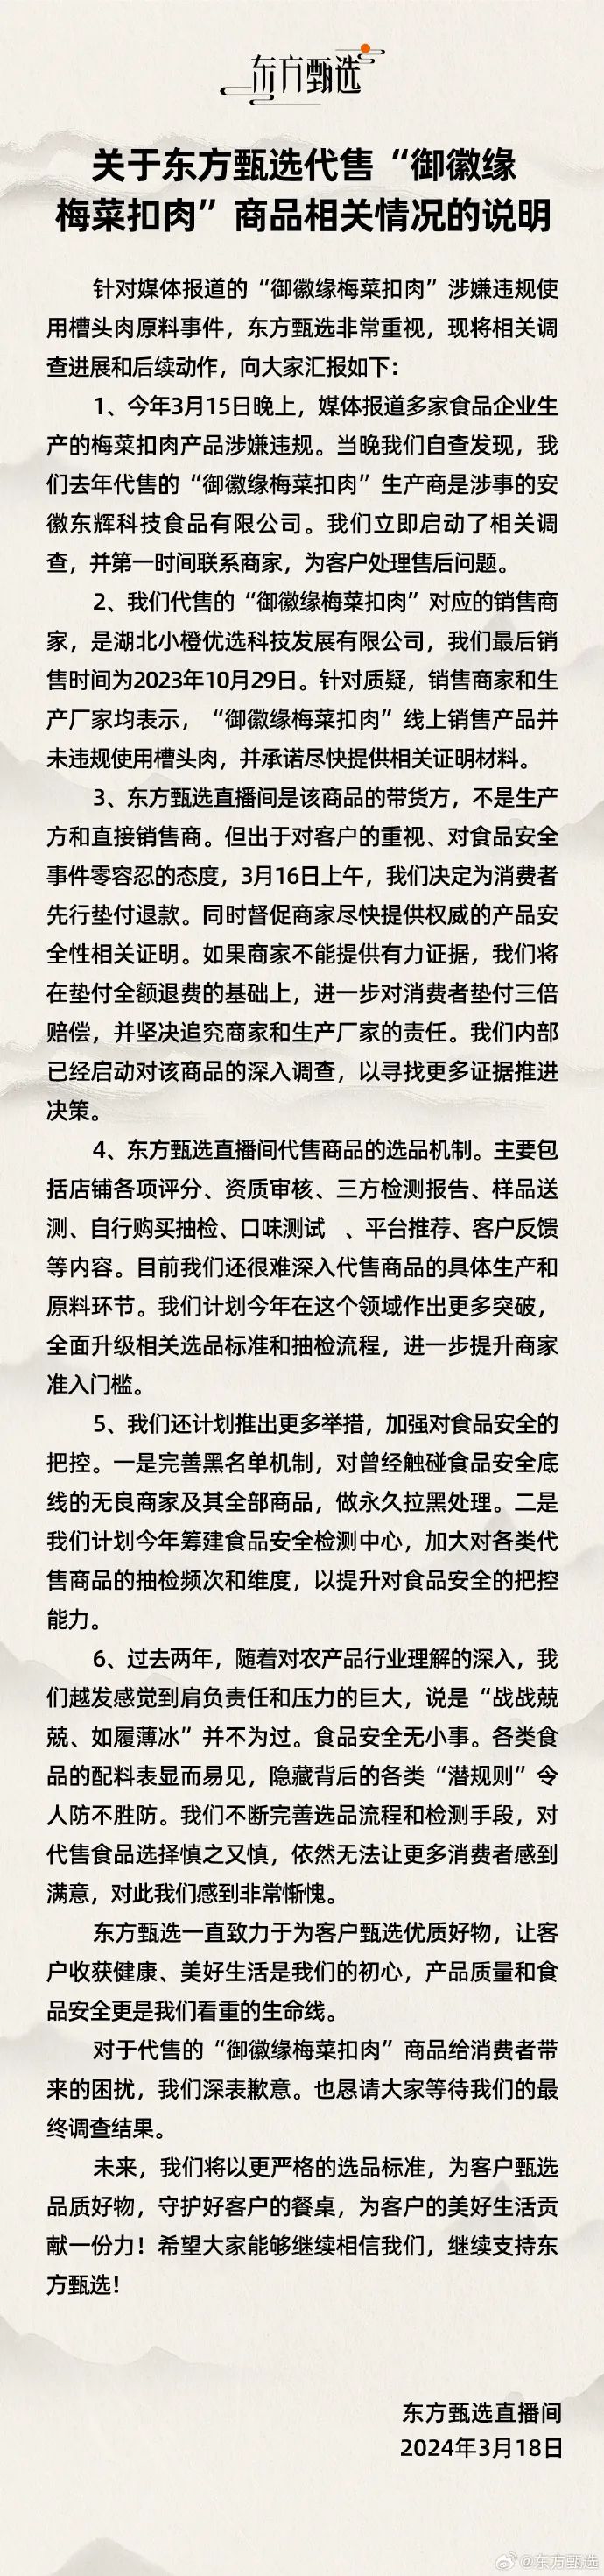 东方甄选3月18日在官方微博发表声明